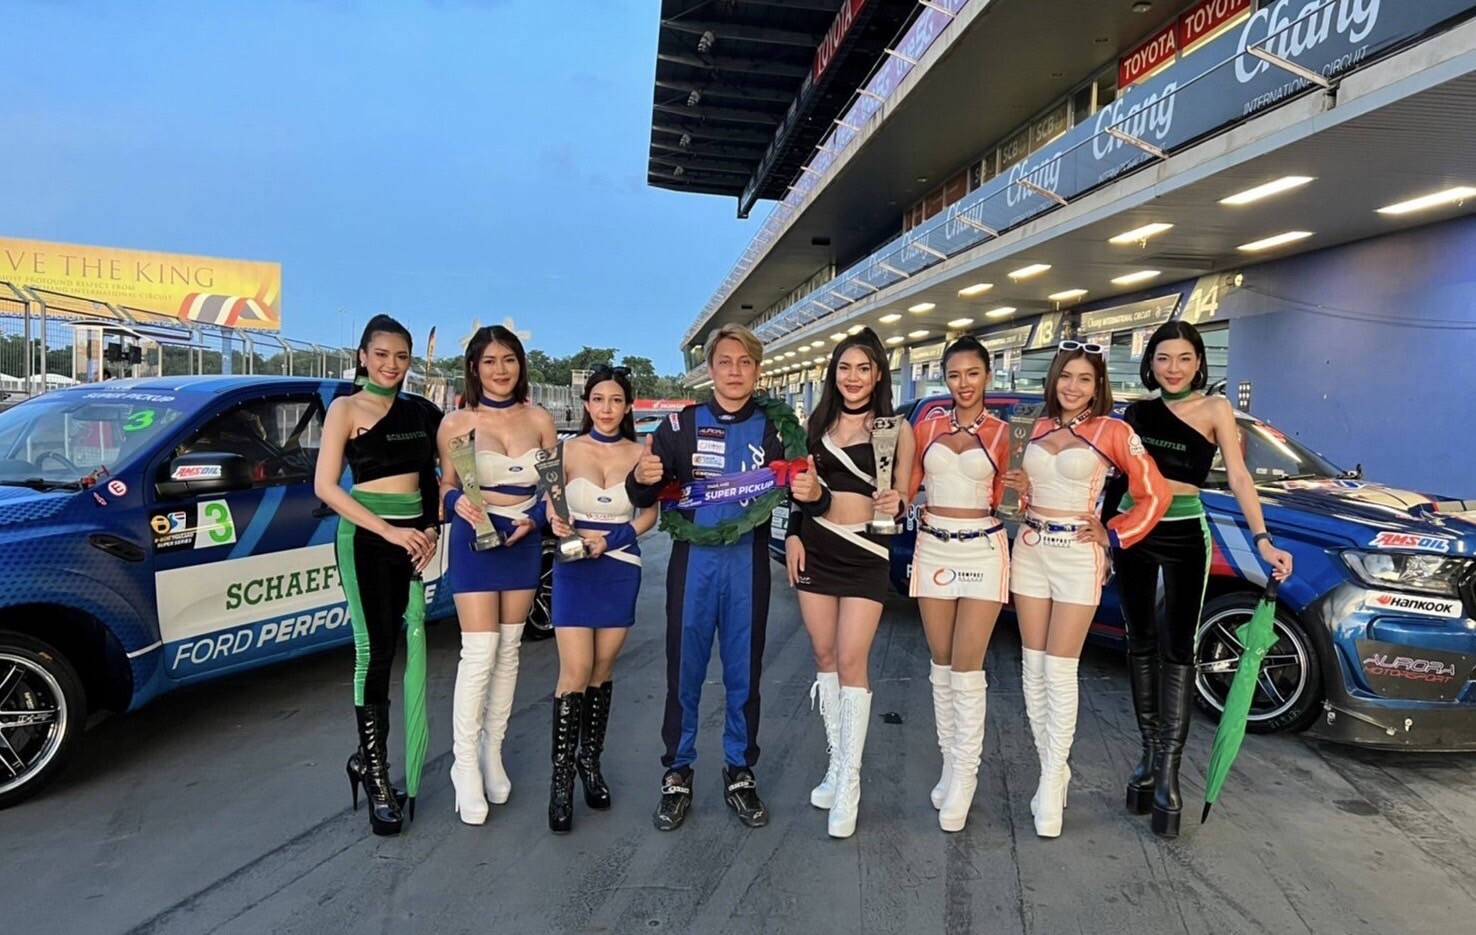 คอมแพ็ค เบรก แสดงความยินดีกับ "ชานนท์ รจนา" คว้าแชมป์ศึกประลองความเร็วรถยนต์ทางเรียบ B-Quick Thailand Super Series 2022